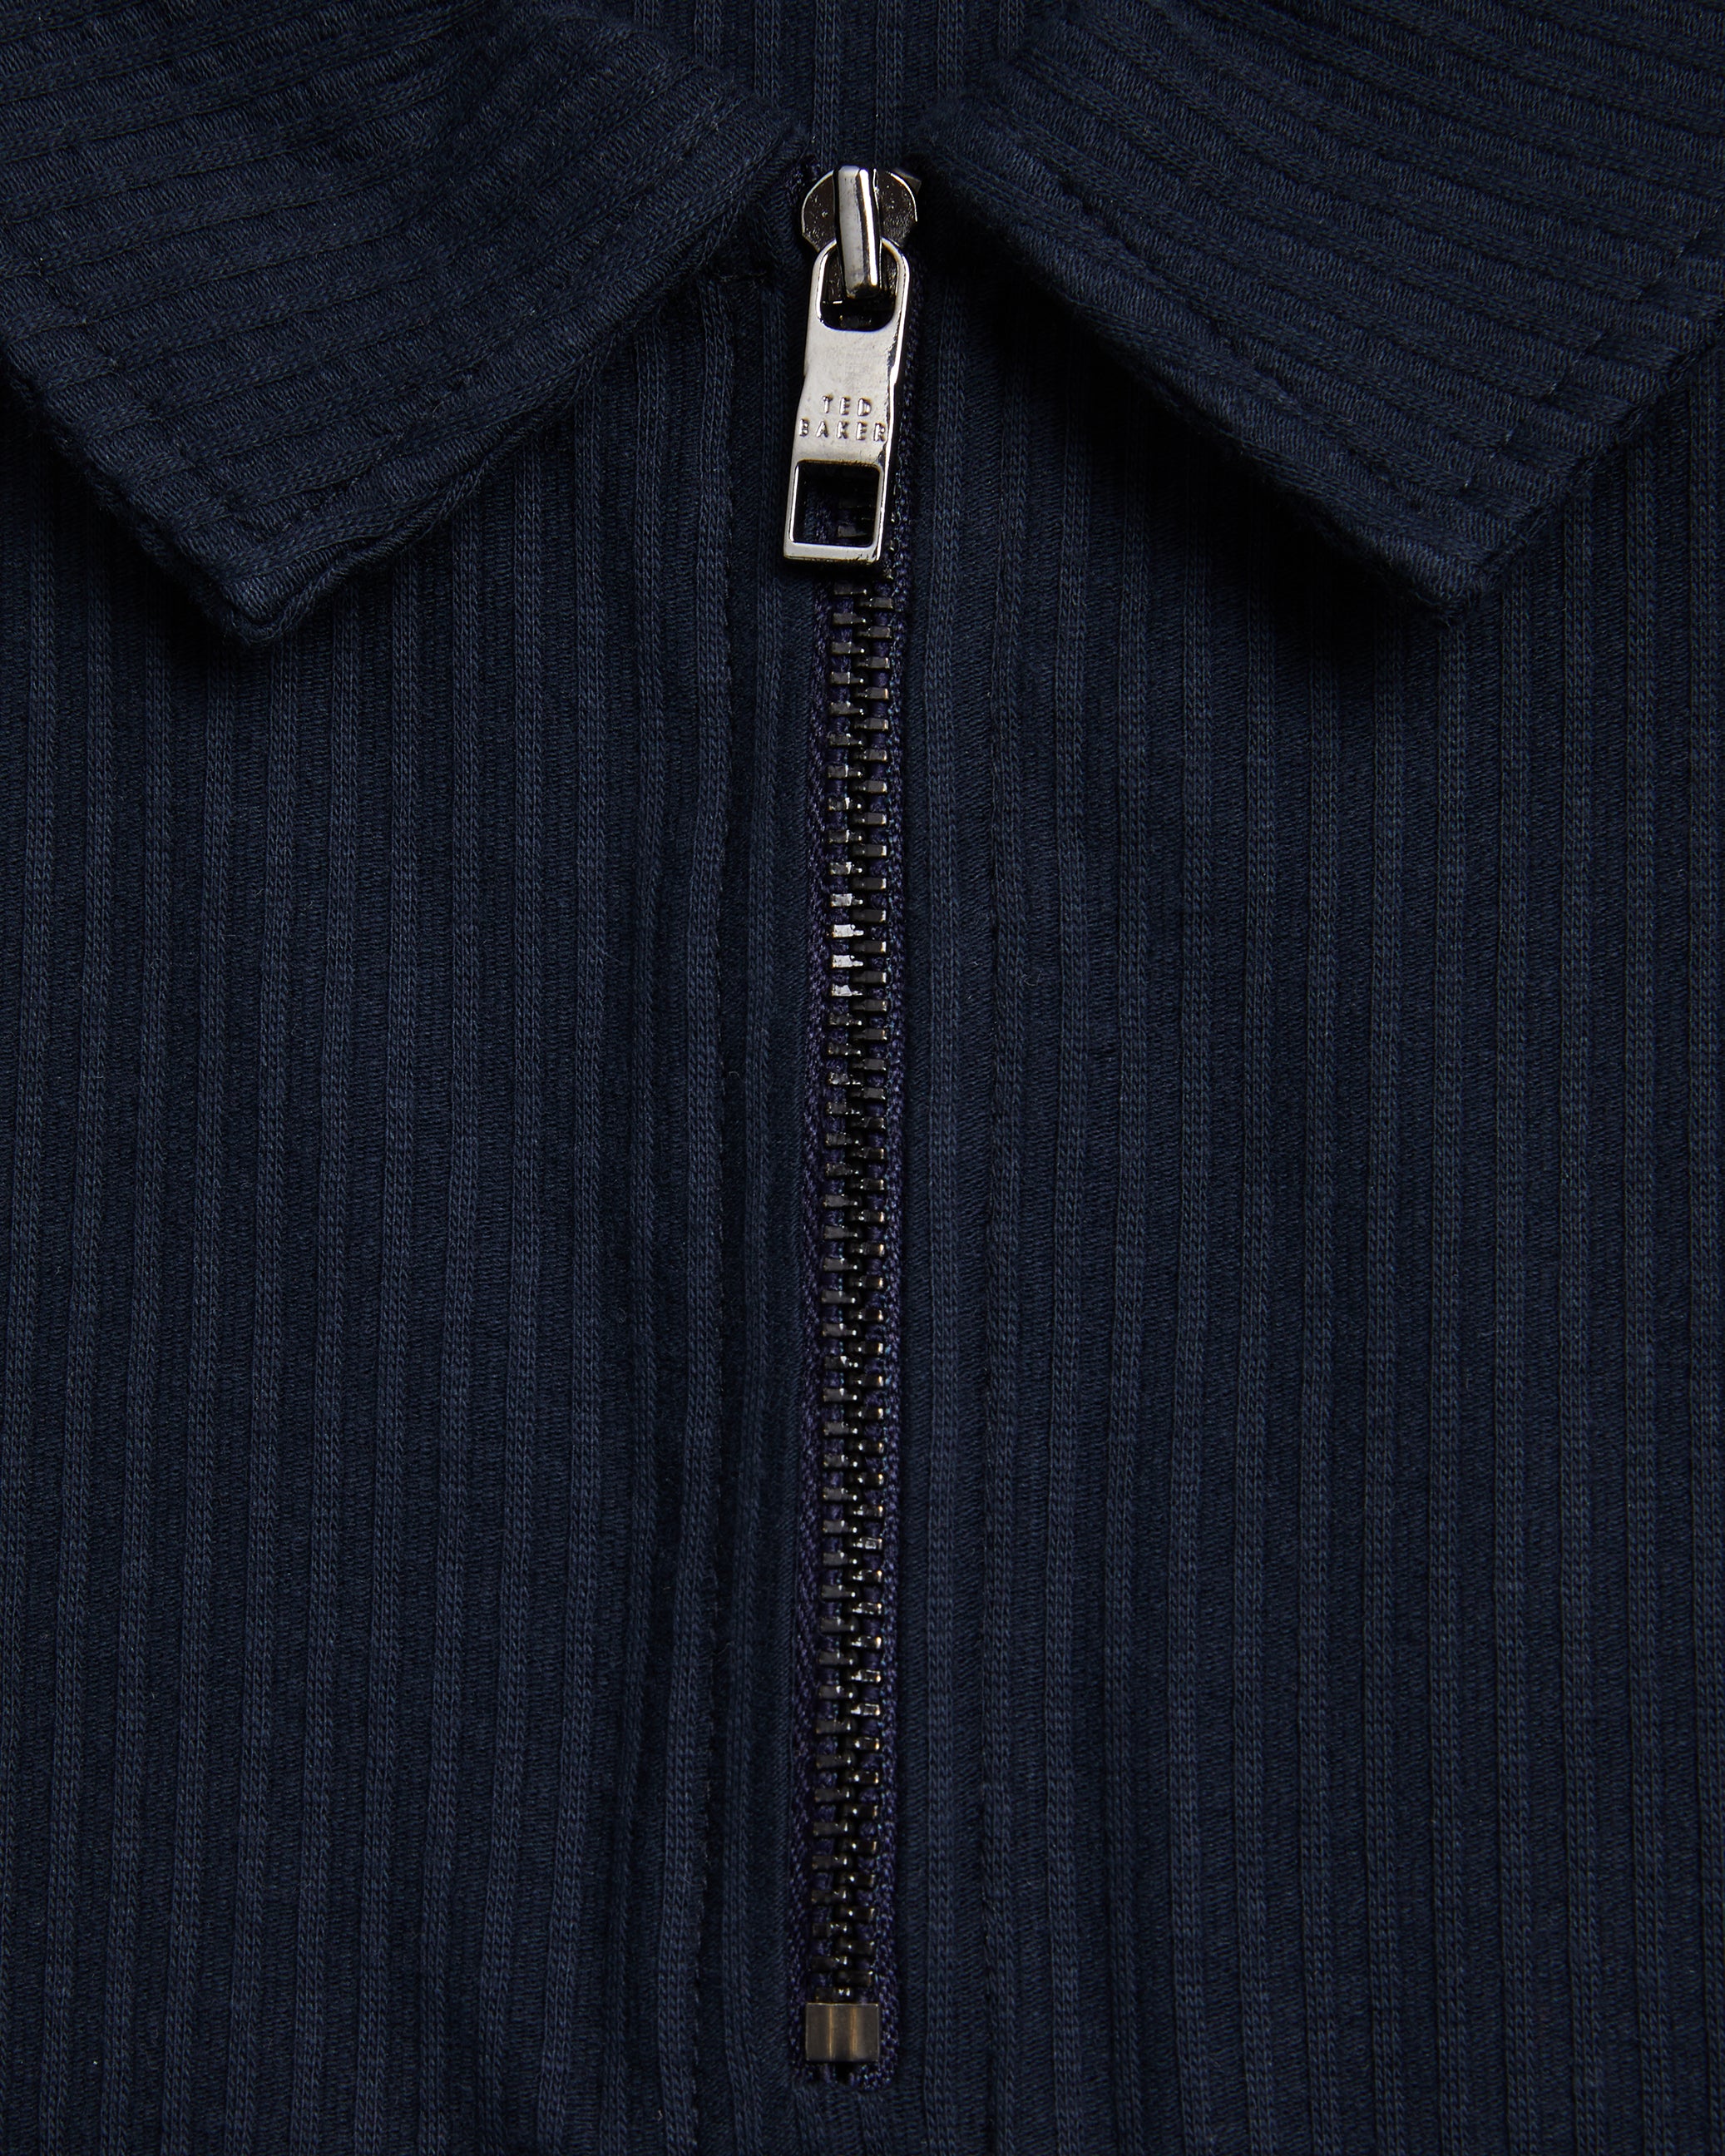 Zarkes Short Sleeve Ribbed Zip Polo Shirt Navy